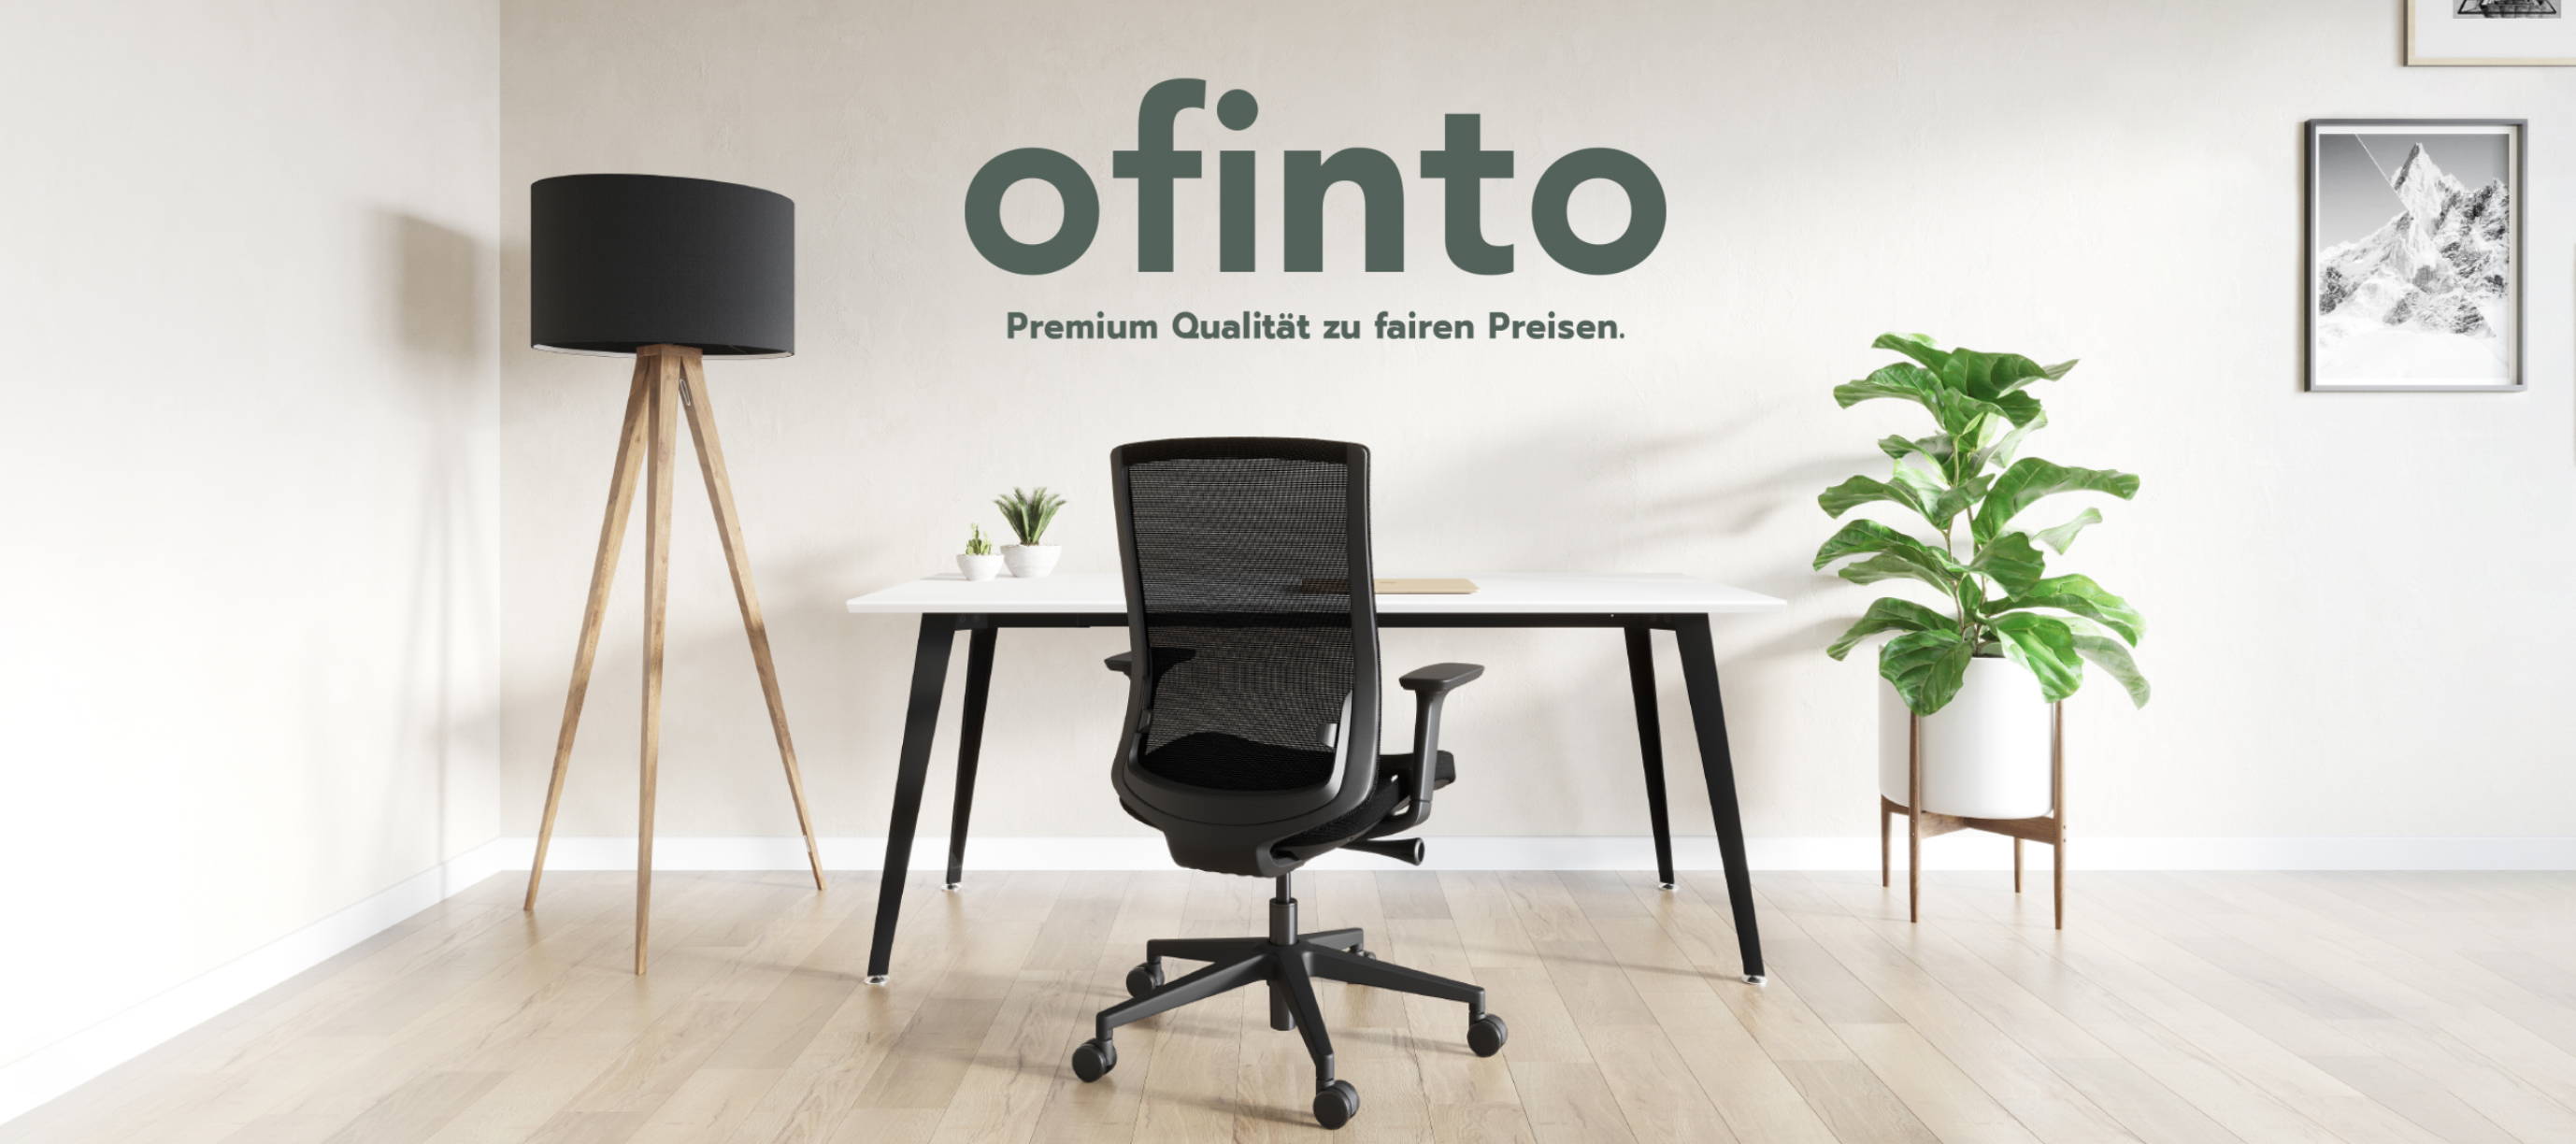 ofinto Ergo und Classic - Ideale Produkte für Ihr Home Office